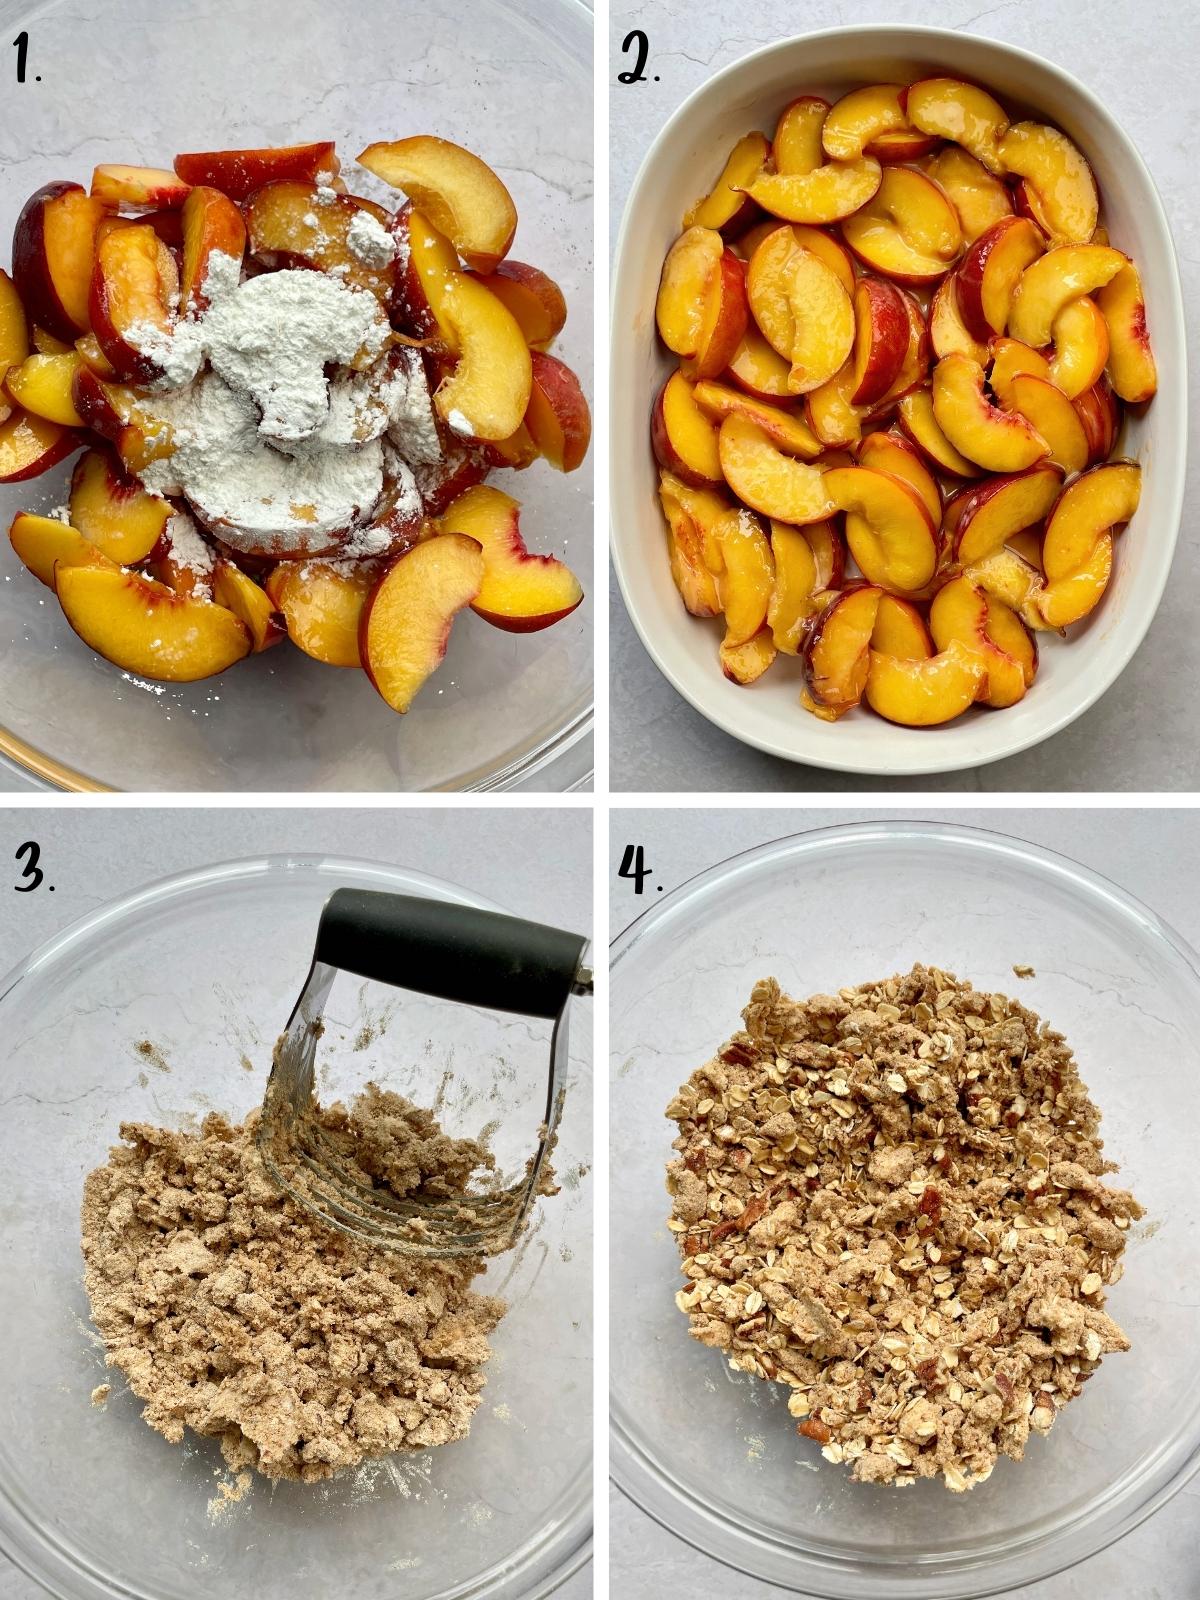 Process step images for making fruit crisp.